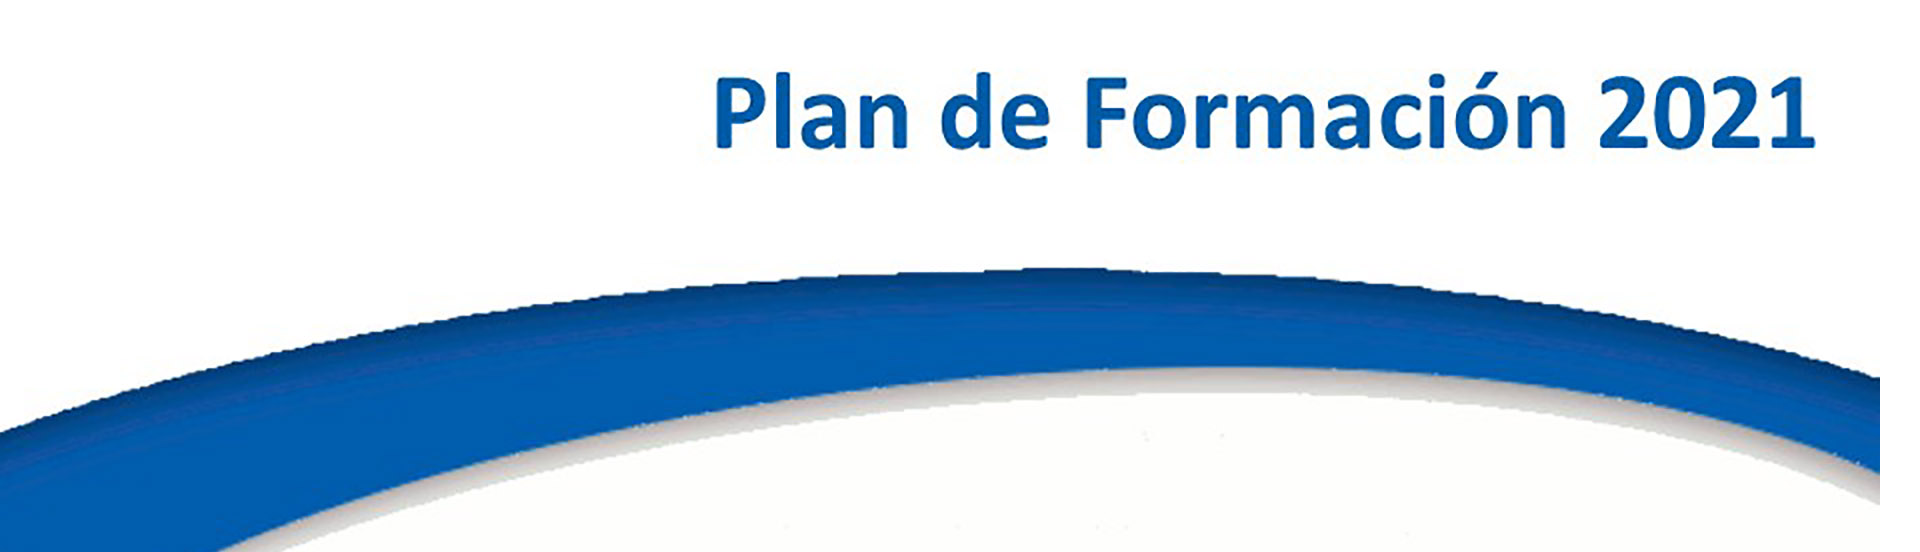 PlanFormacion2021